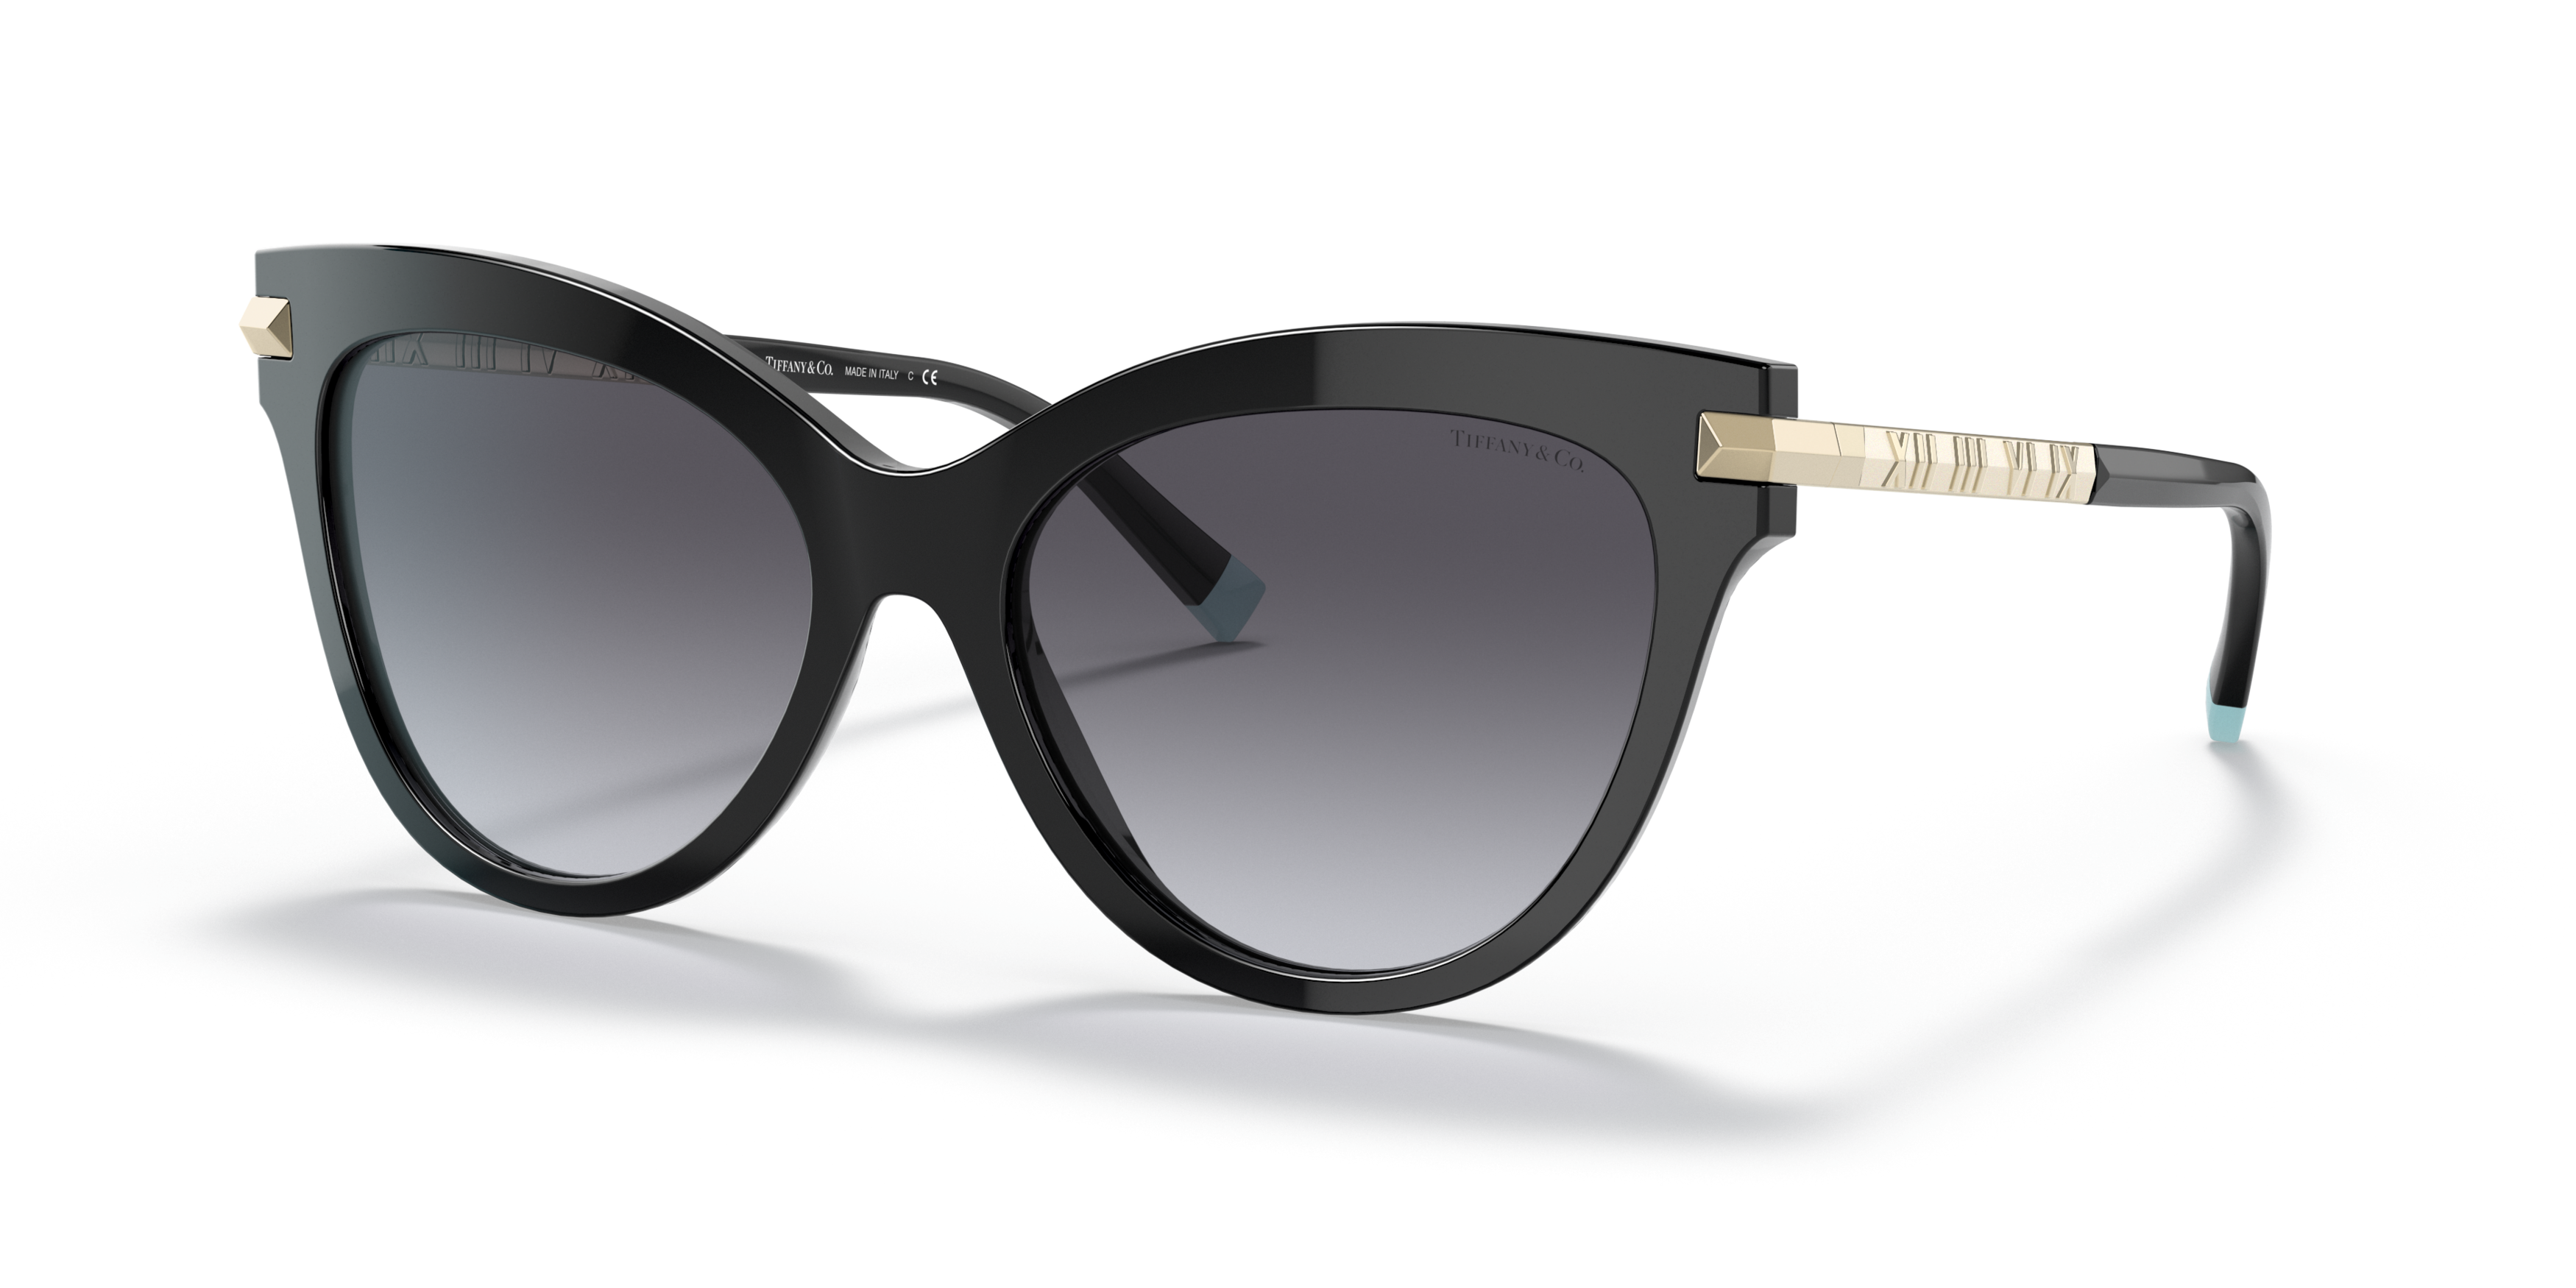 Angle_Left01 Tiffany & Co TF 4182 (80013C) Sunglasses Grey / Black